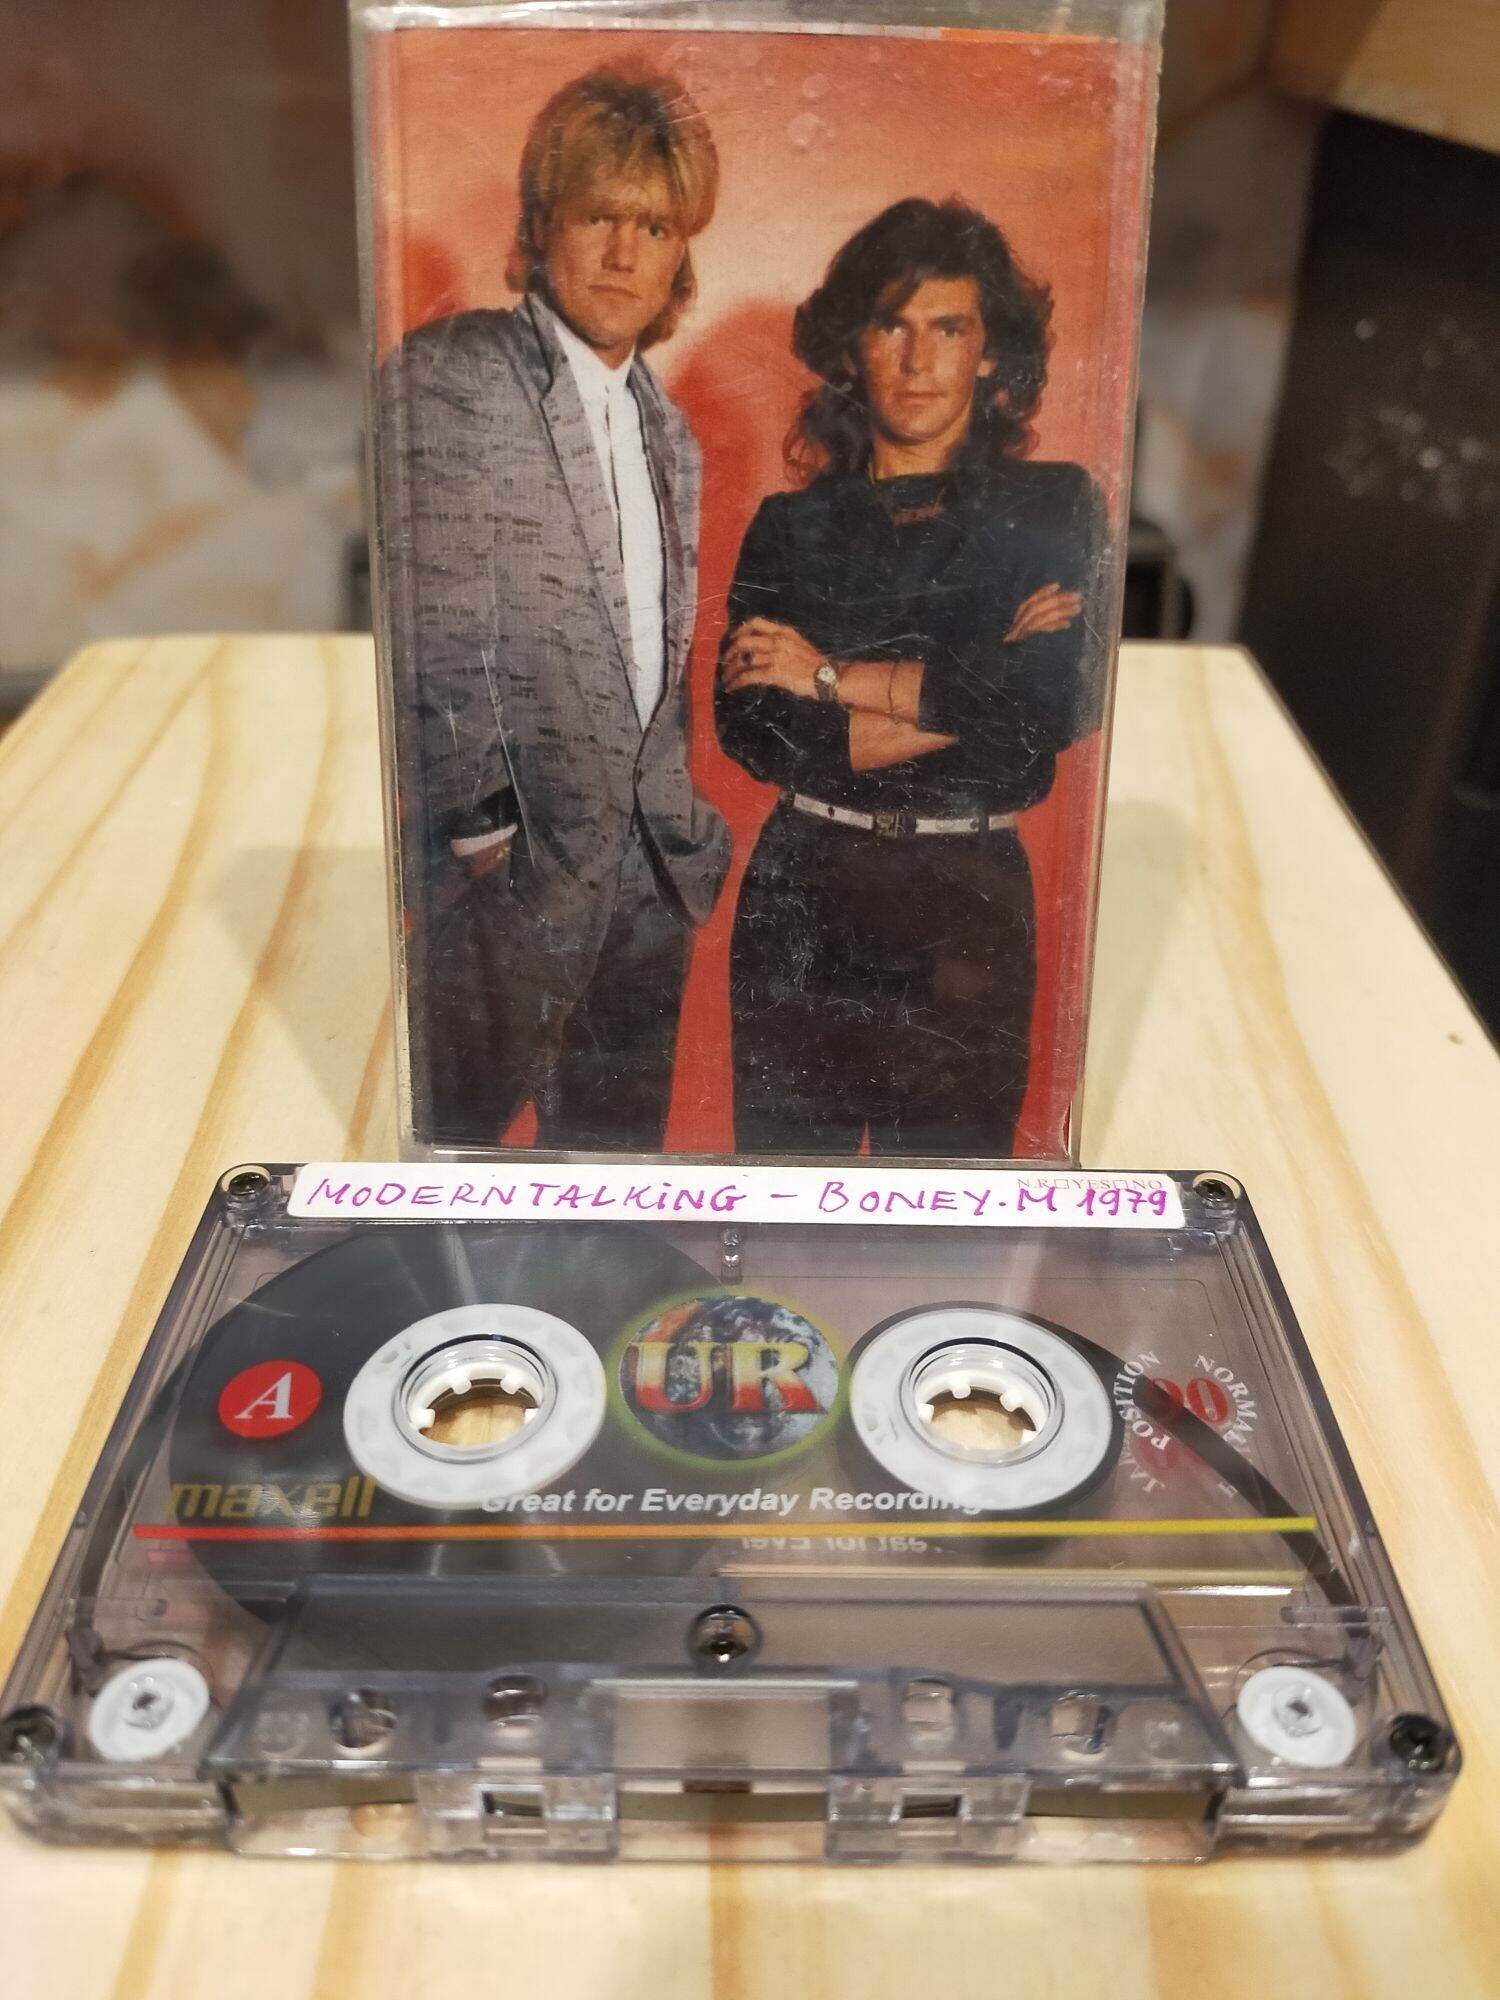 1 băng cassette maxell UR 90 phút modern talking - Boney( lưu ý: đây là băng cũ